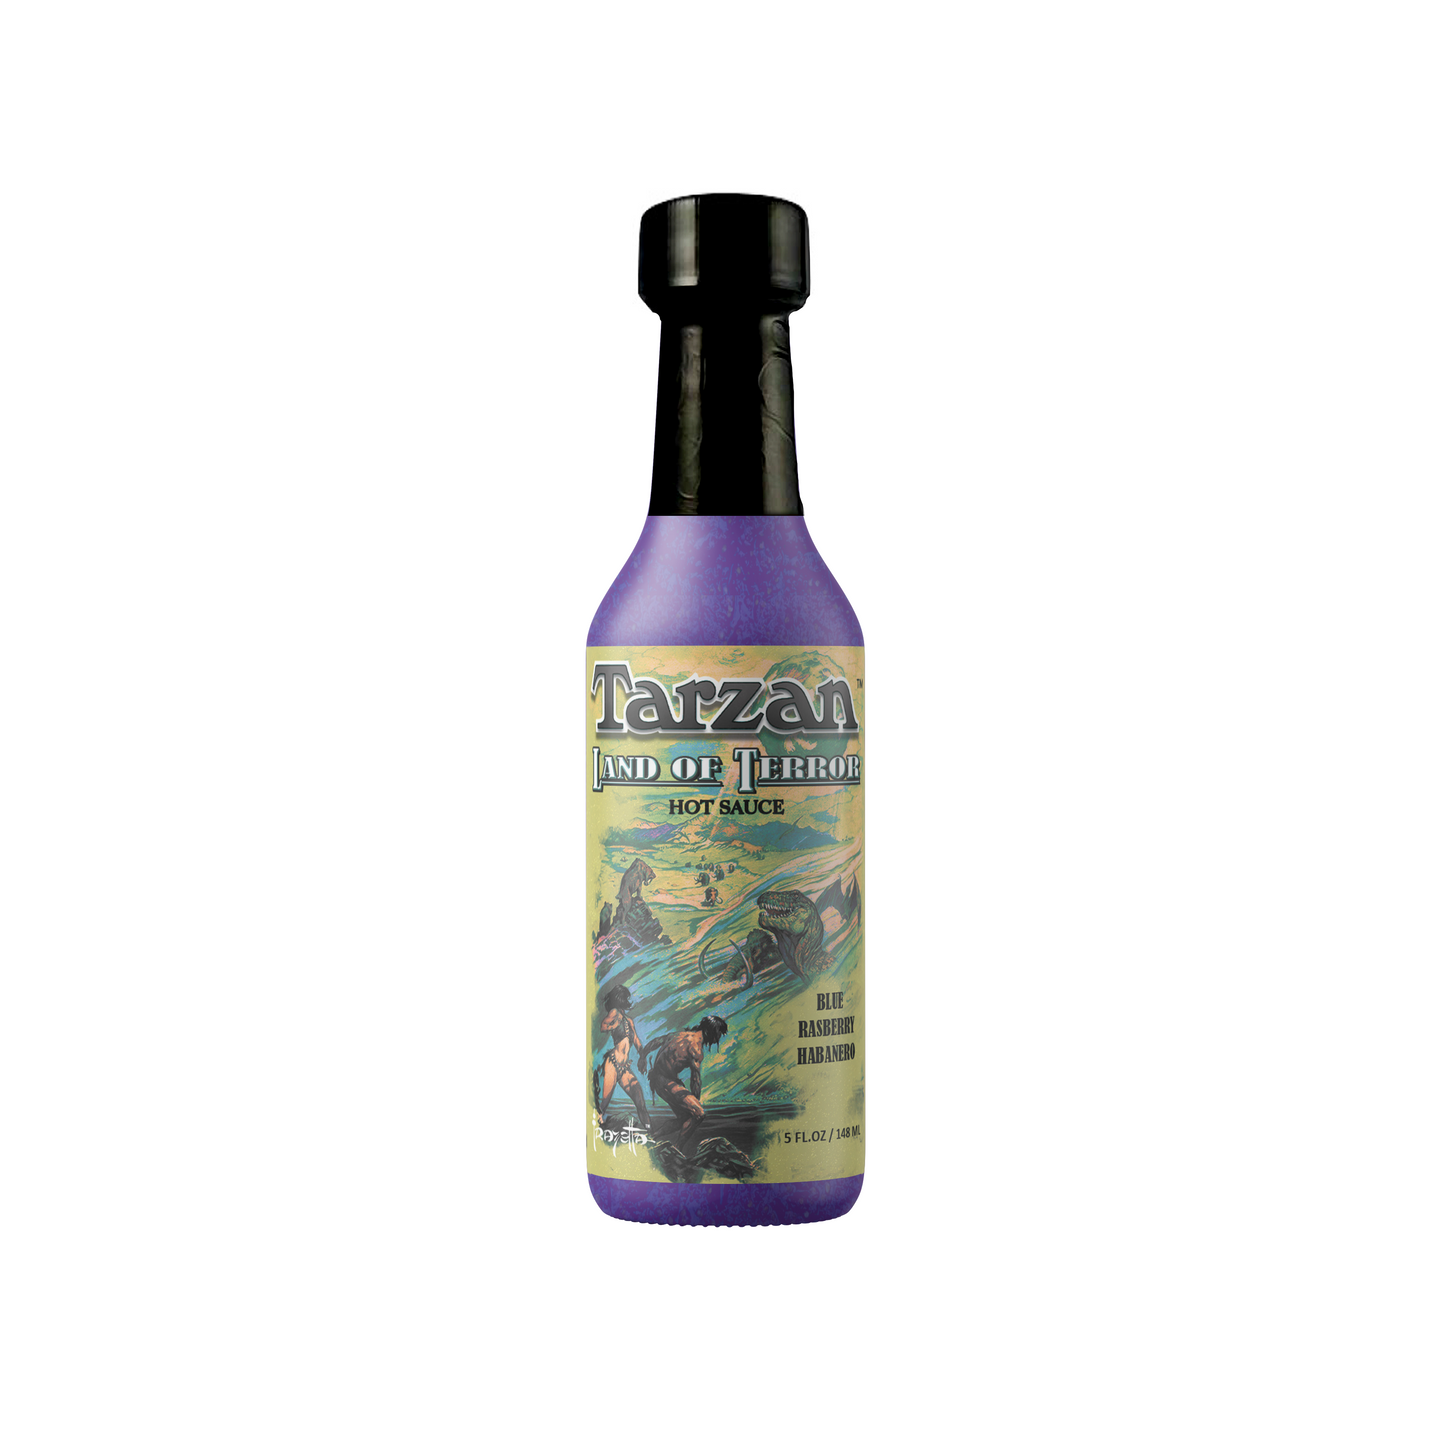 Tarzan's Land of Terror : Blue Raspberry Habanero Sauce